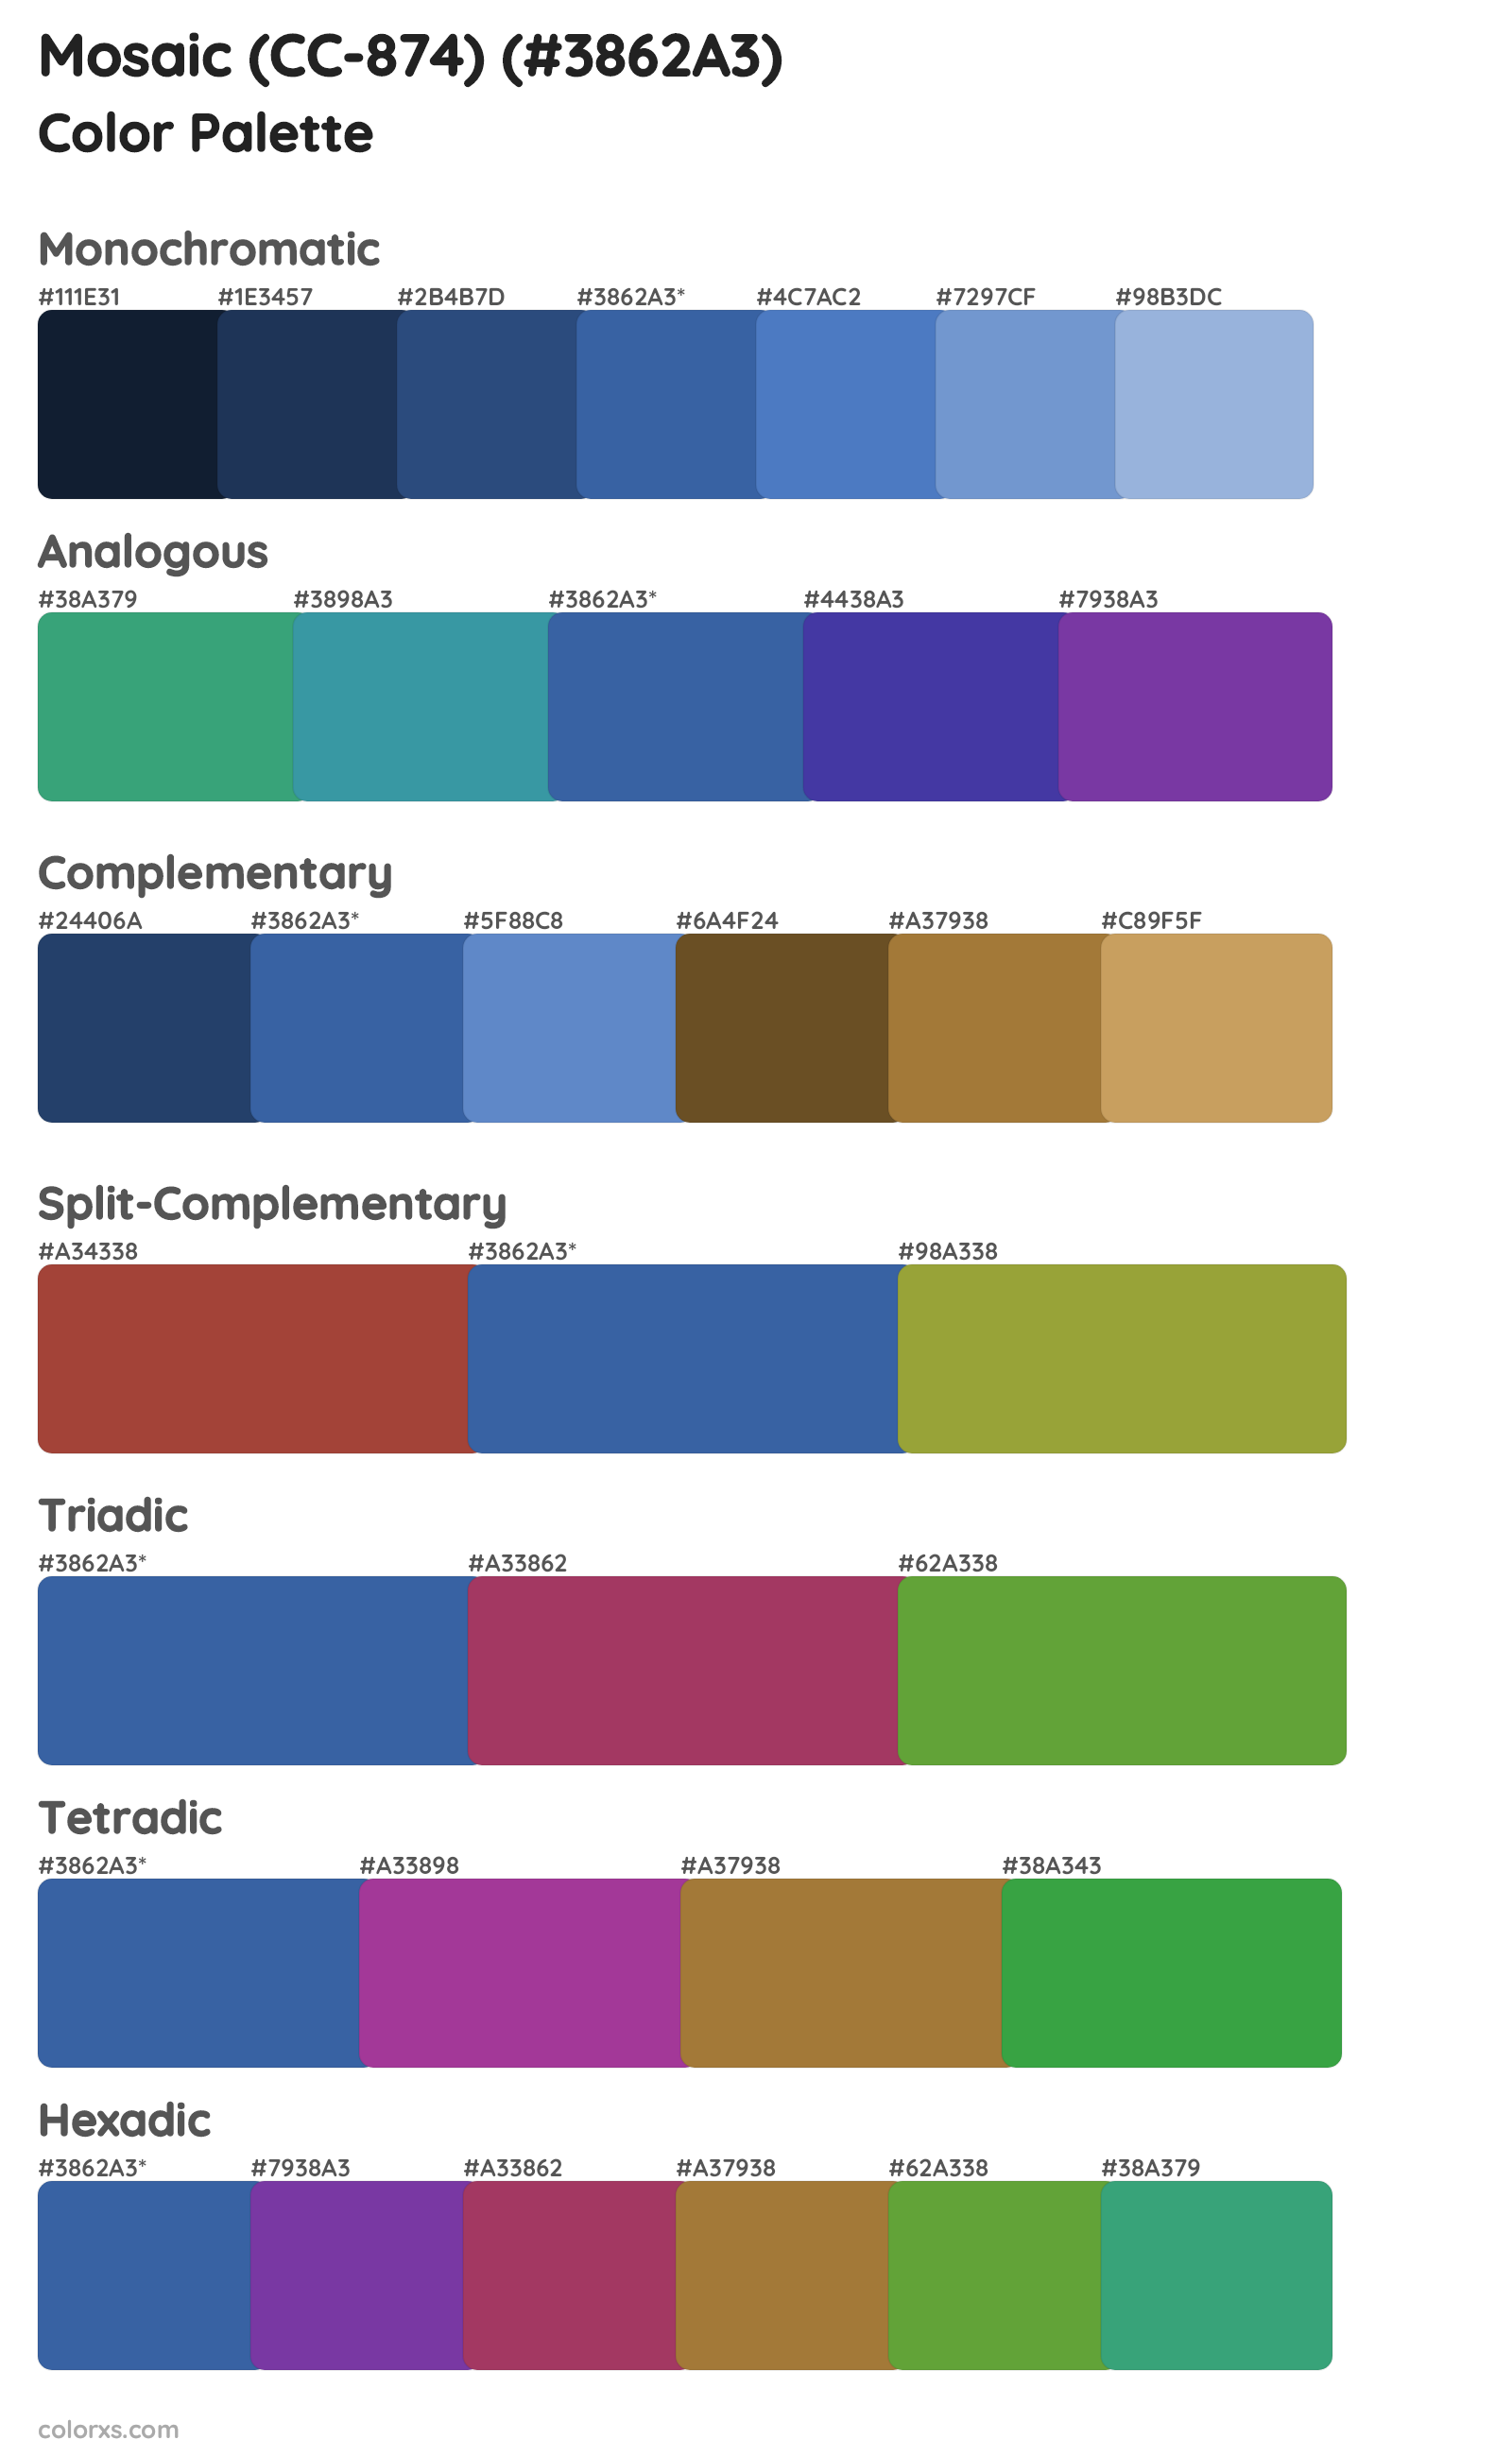 Mosaic (CC-874) Color Scheme Palettes